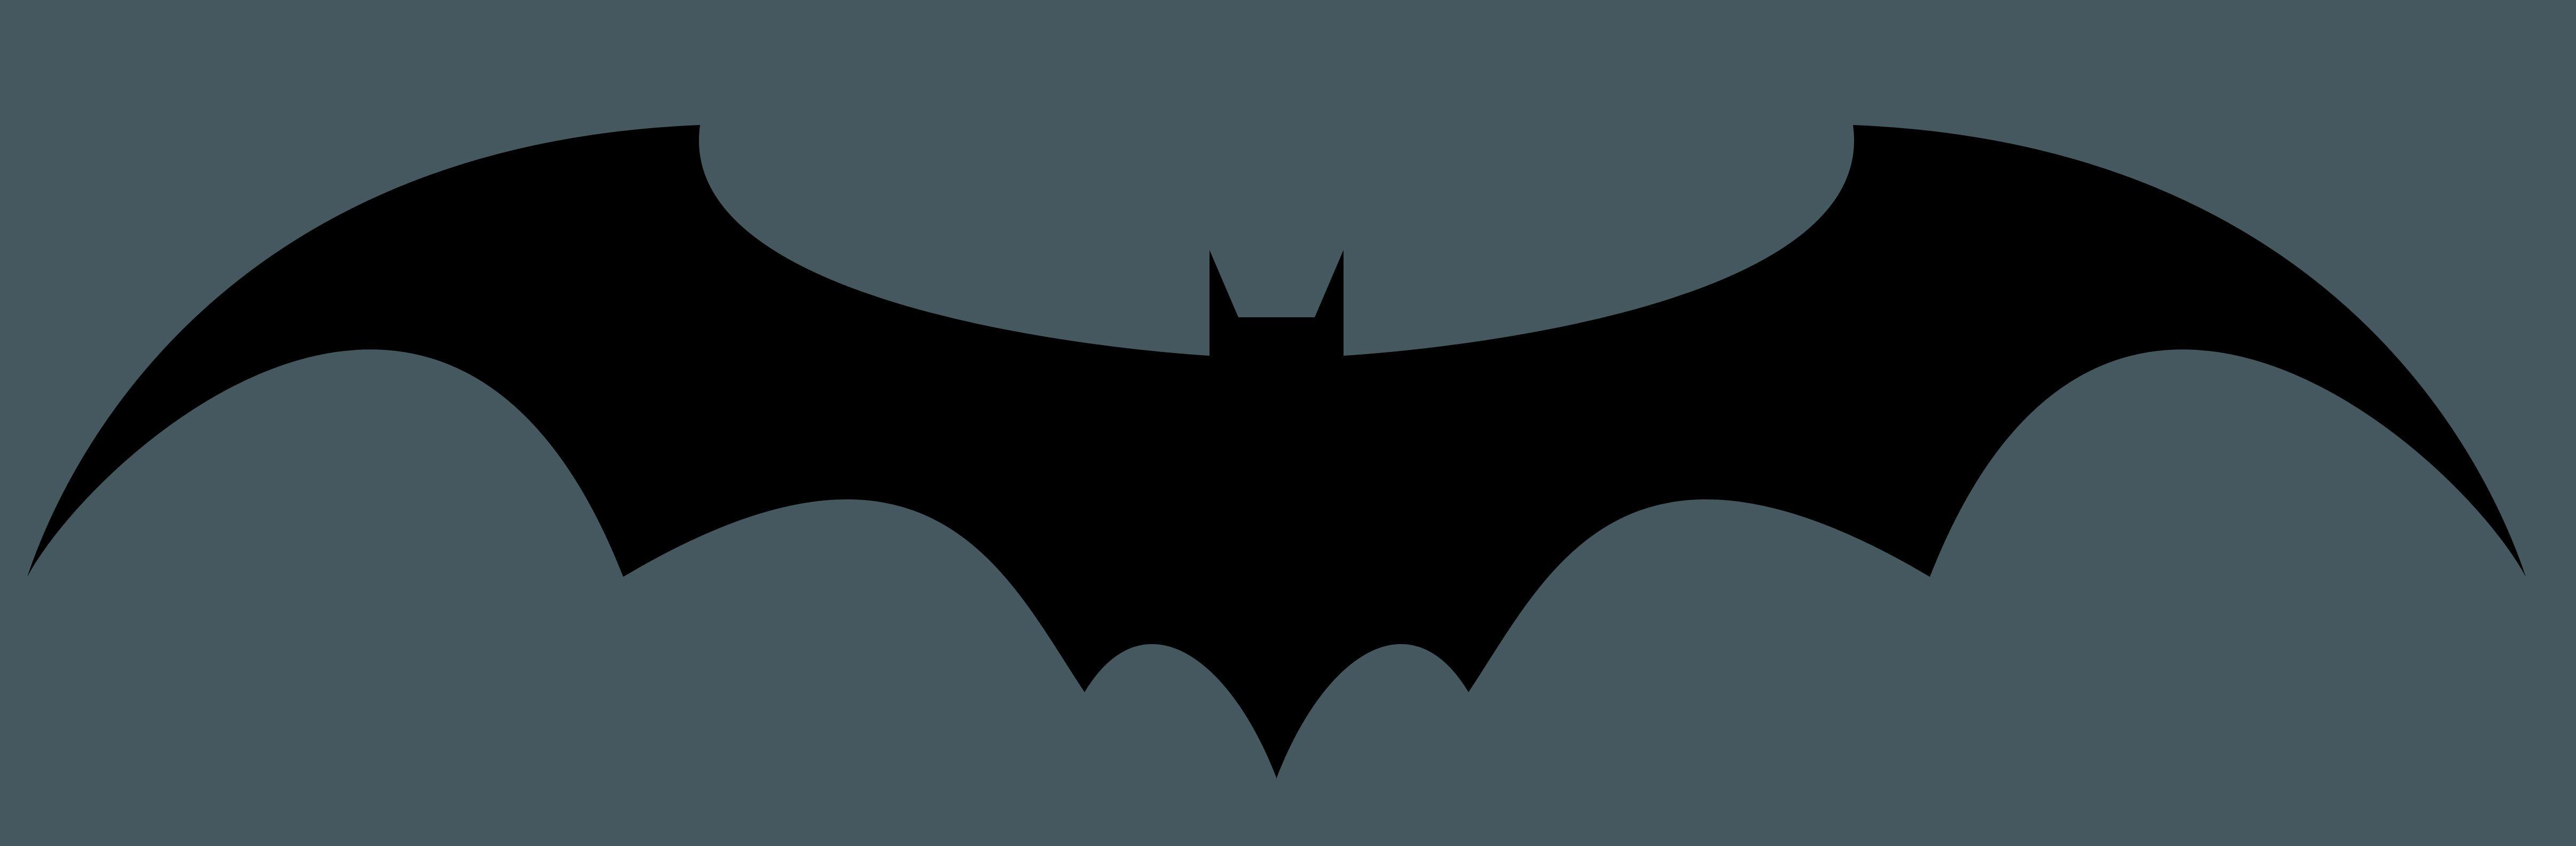 Batman Arkham Asylum Batman Logo - Batman arkham asylum Logos